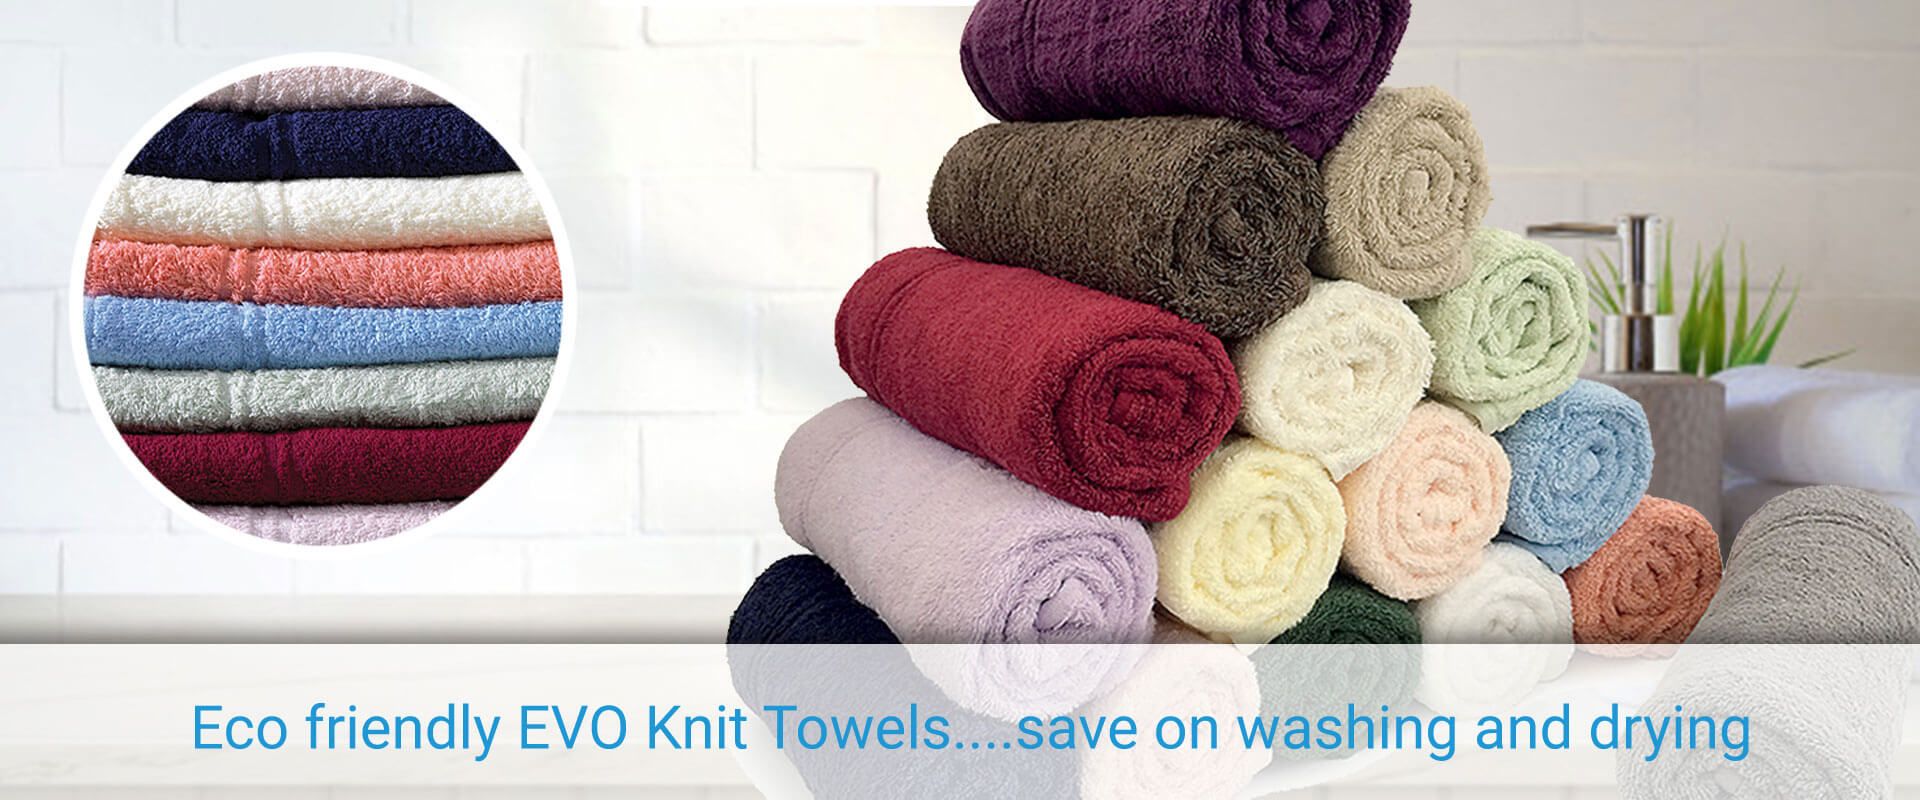 EVO knit towels